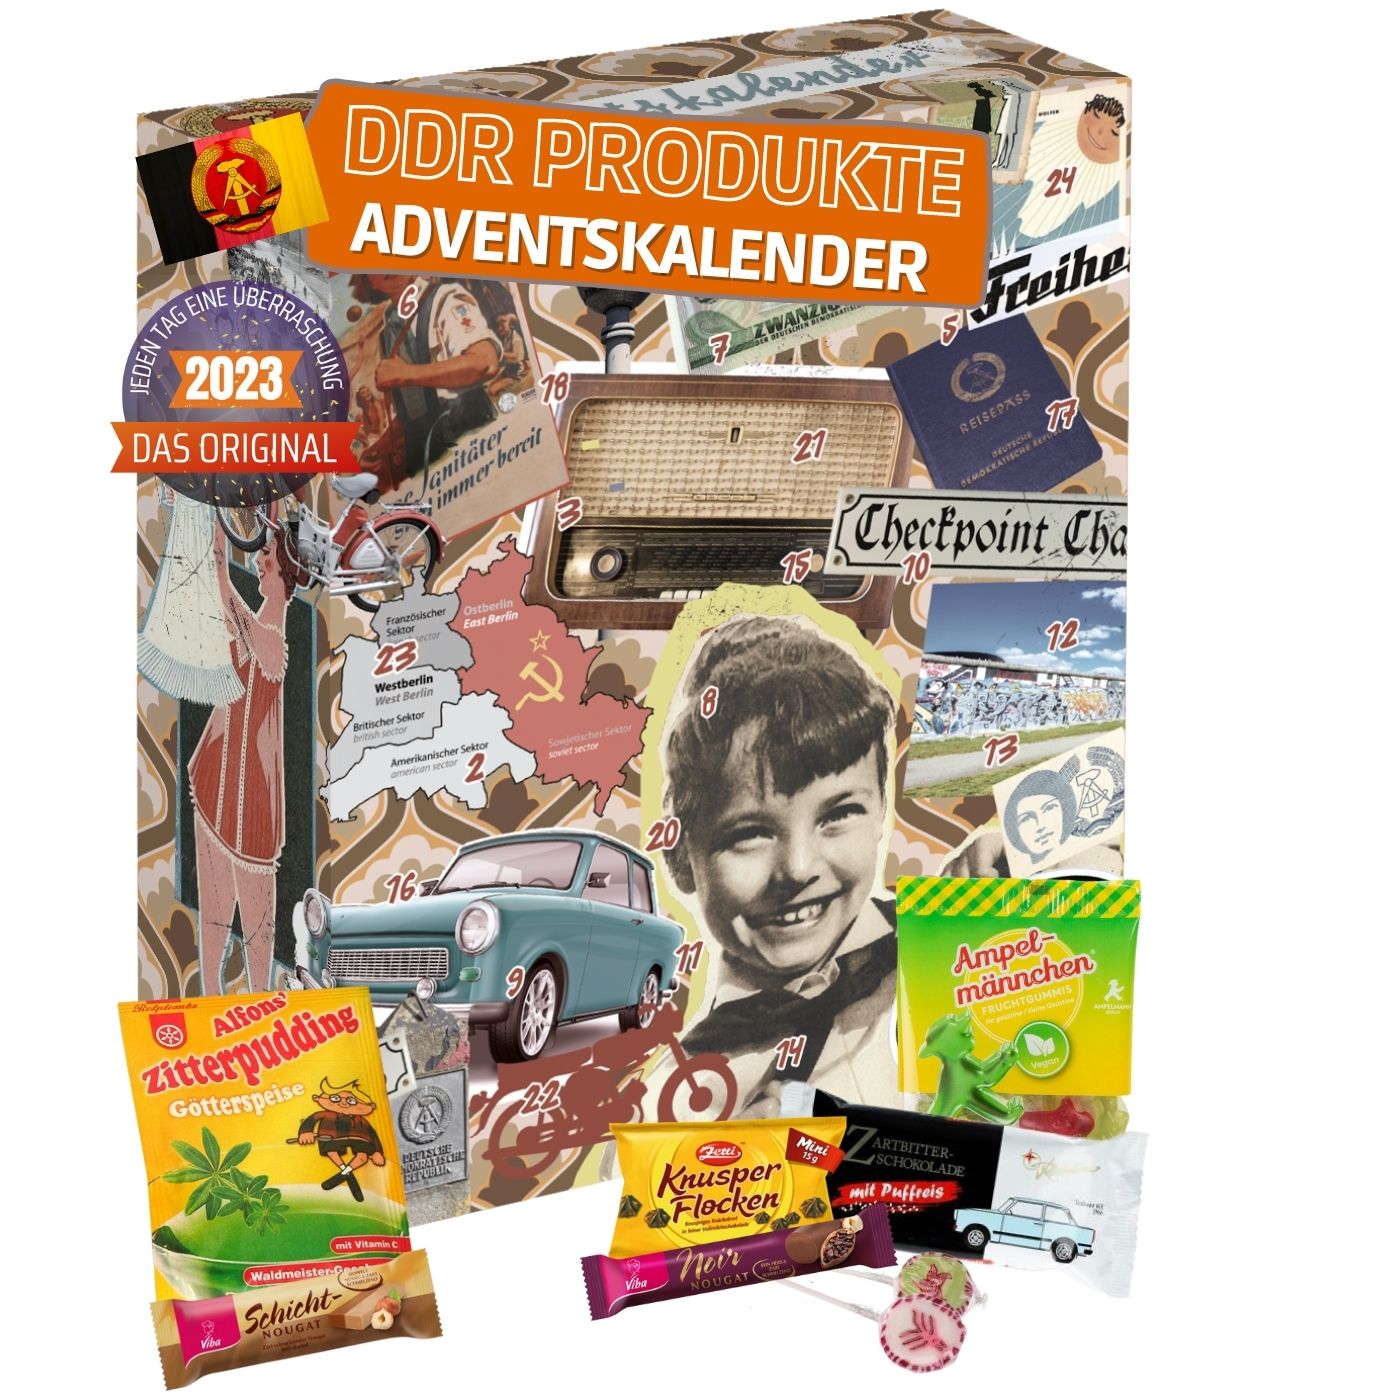 DDR Adventskalender mit 24 Ostdeutschen Produkten I Geschenkset Ostprodukte I Adventskalender 2023 mit Süßigkeiten aus der DDR